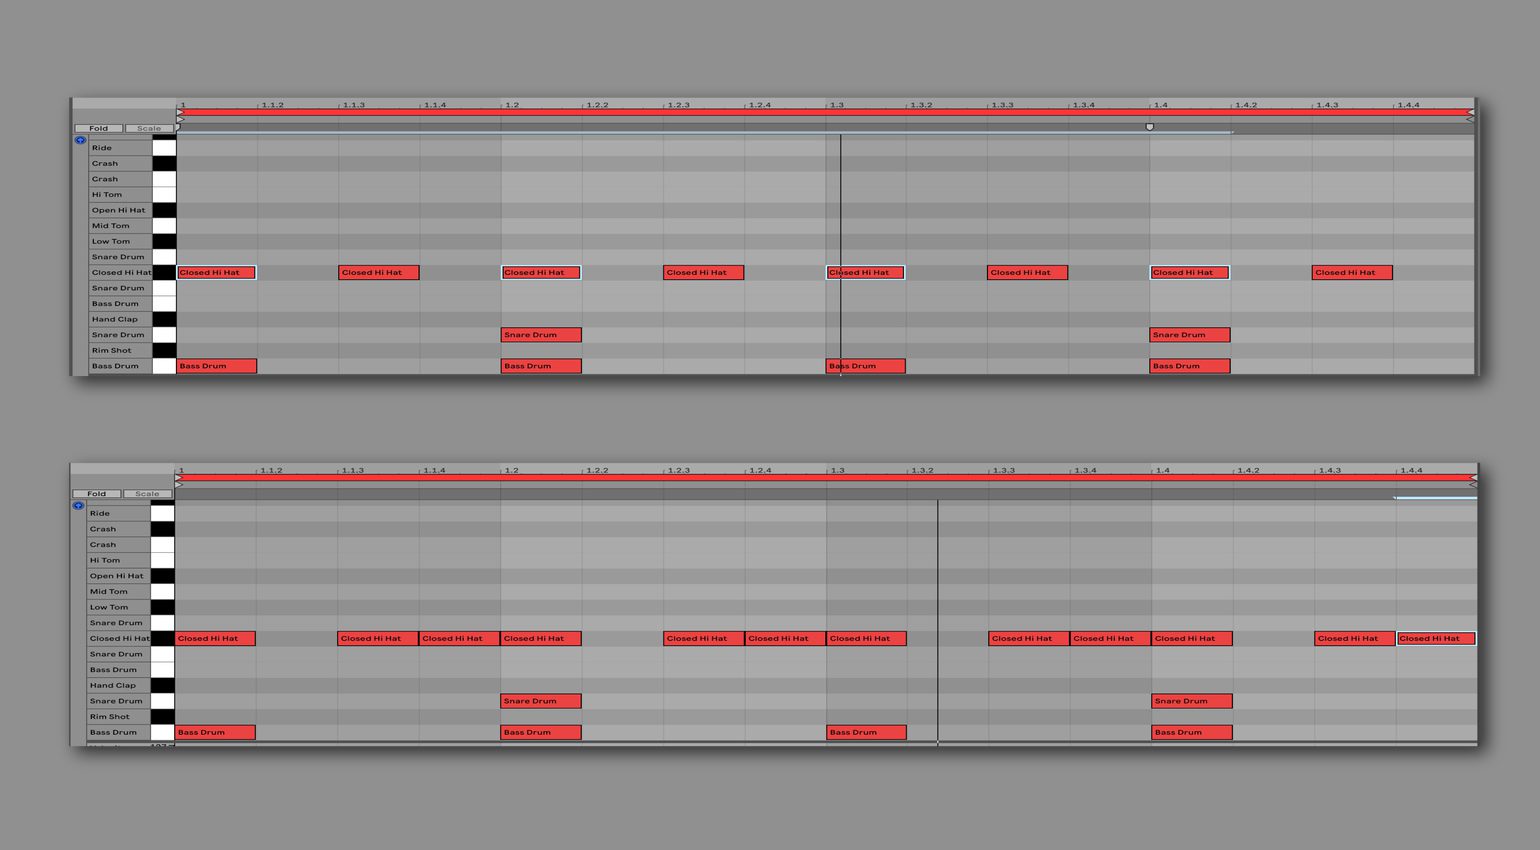 Même motif Kick et Snare, rythmes Hihat différents - groove extrêmement différent ! 